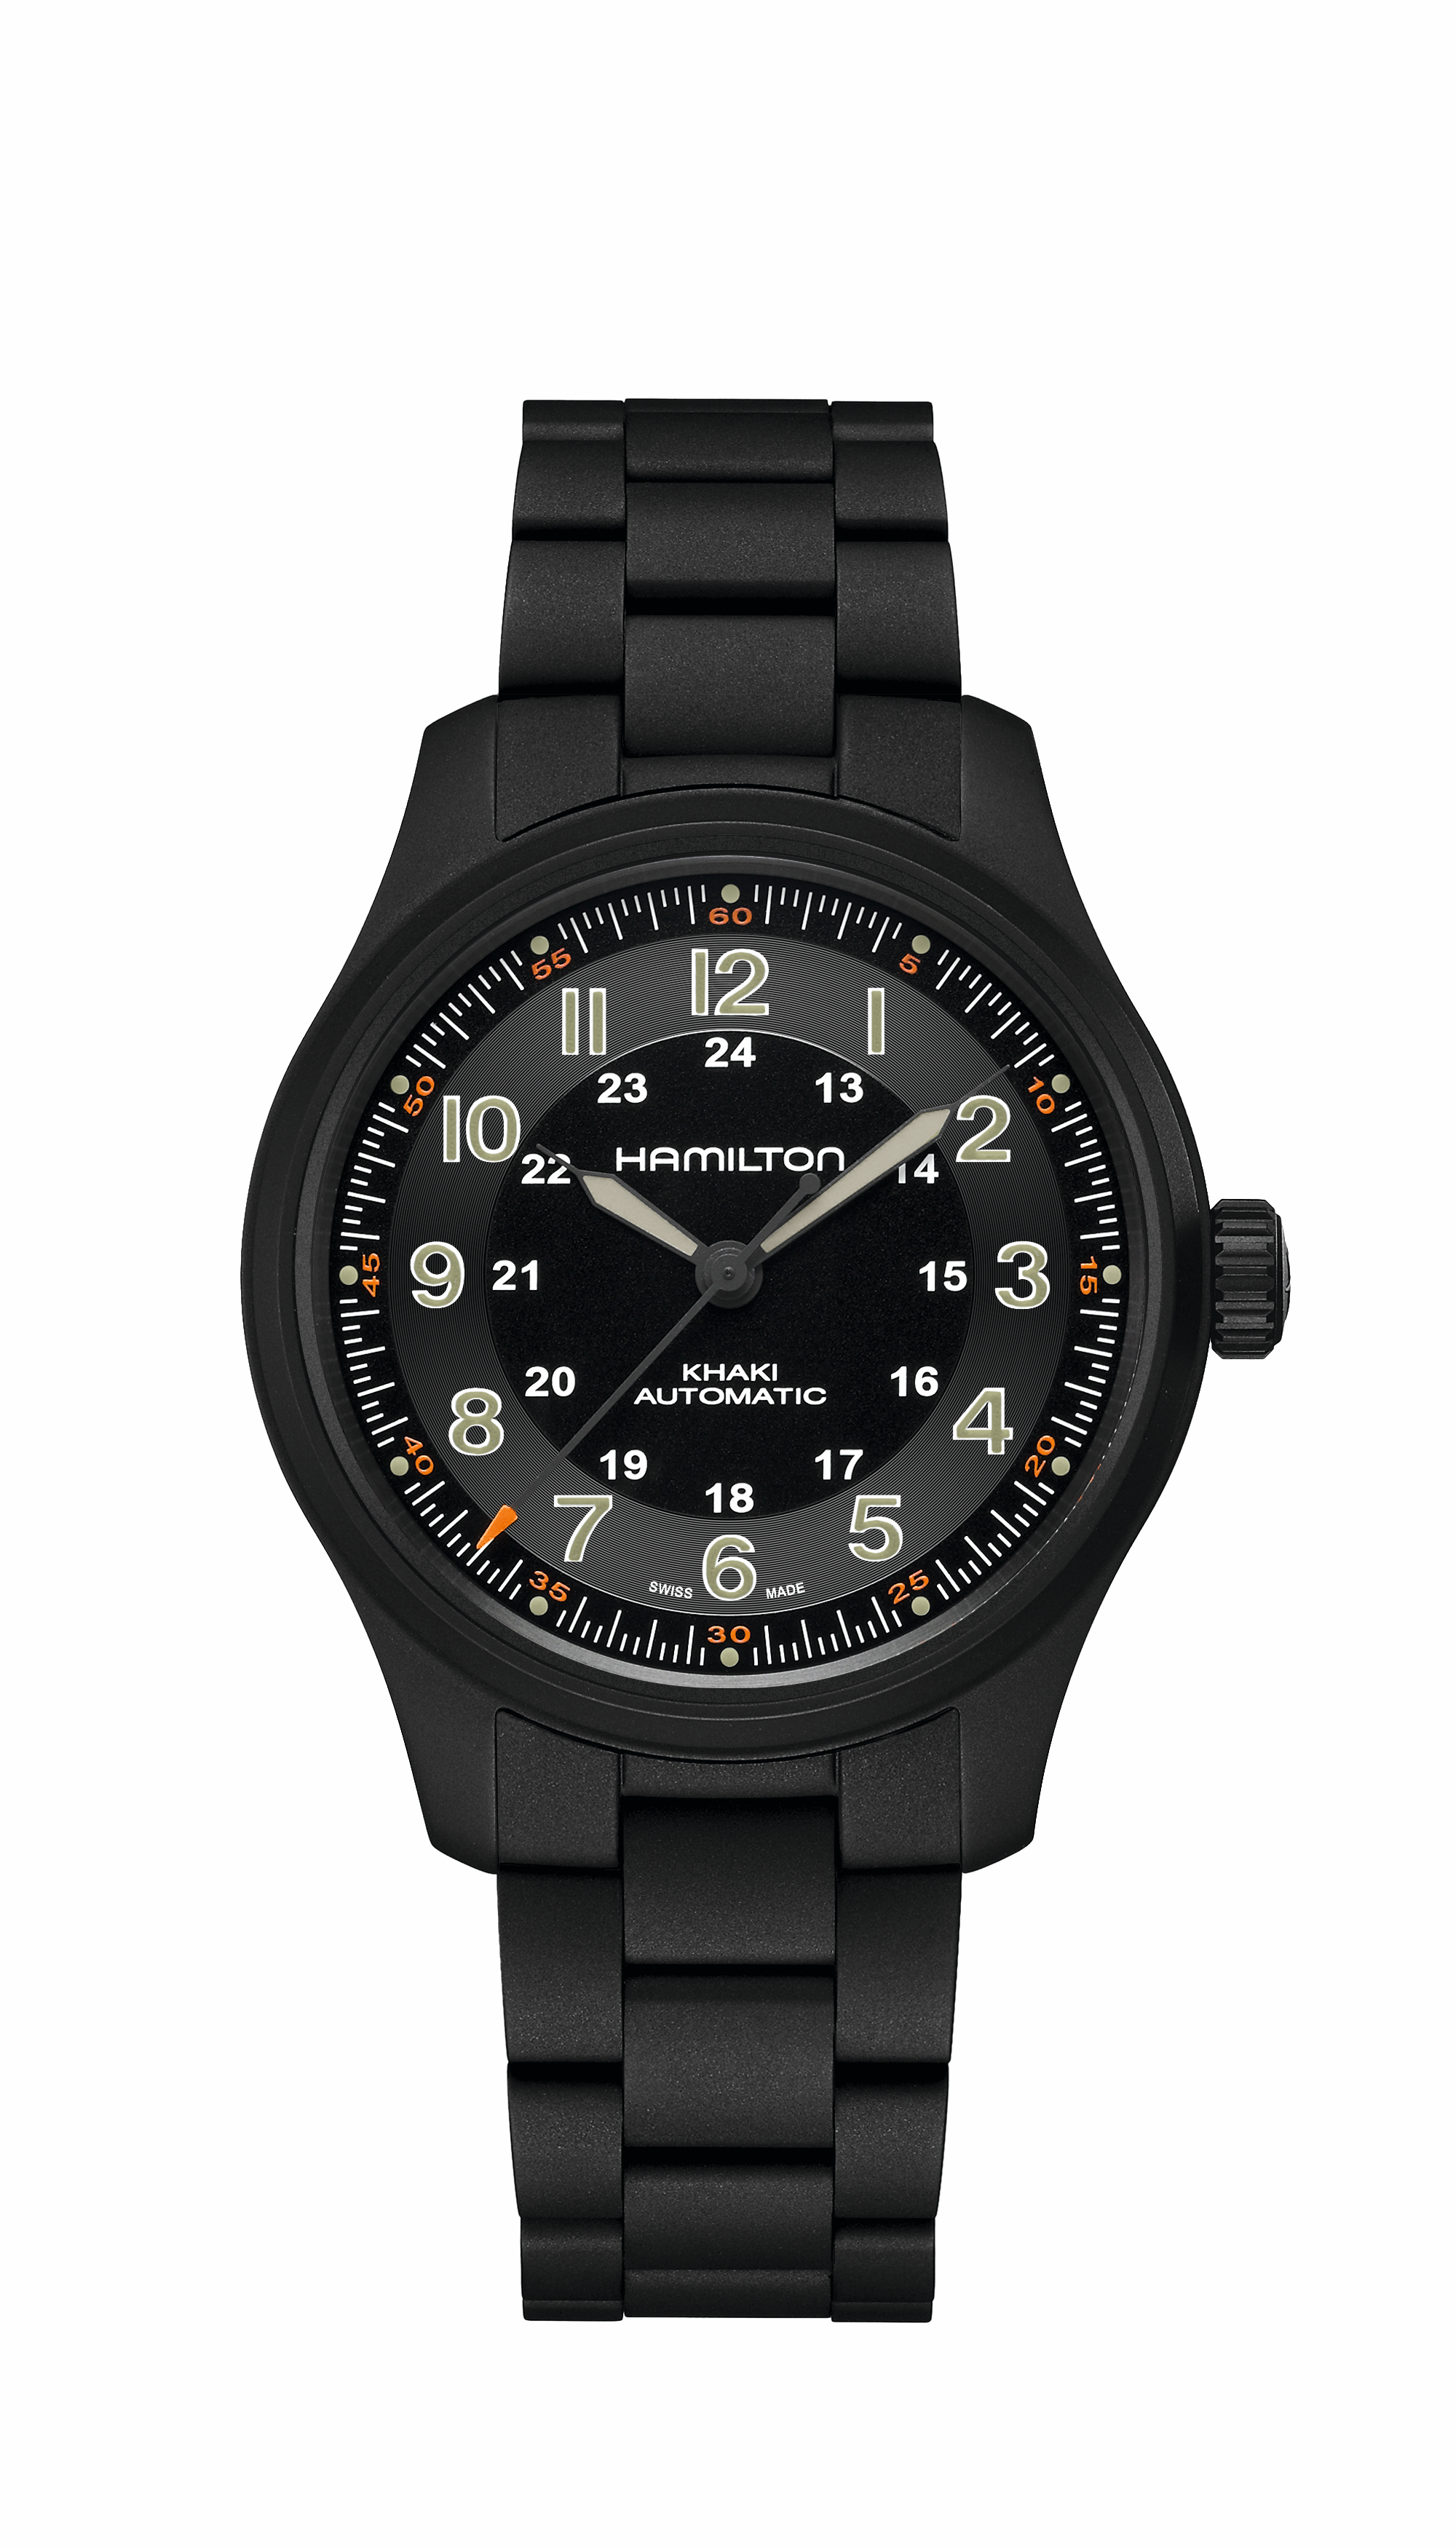 Embarquez pour l’aventure avec la montre Hamilton Khaki Field Titanium Automatique, disponible chez Dumas Horloger à Avignon. Un choix audacieux pour l’explorateur en vous.